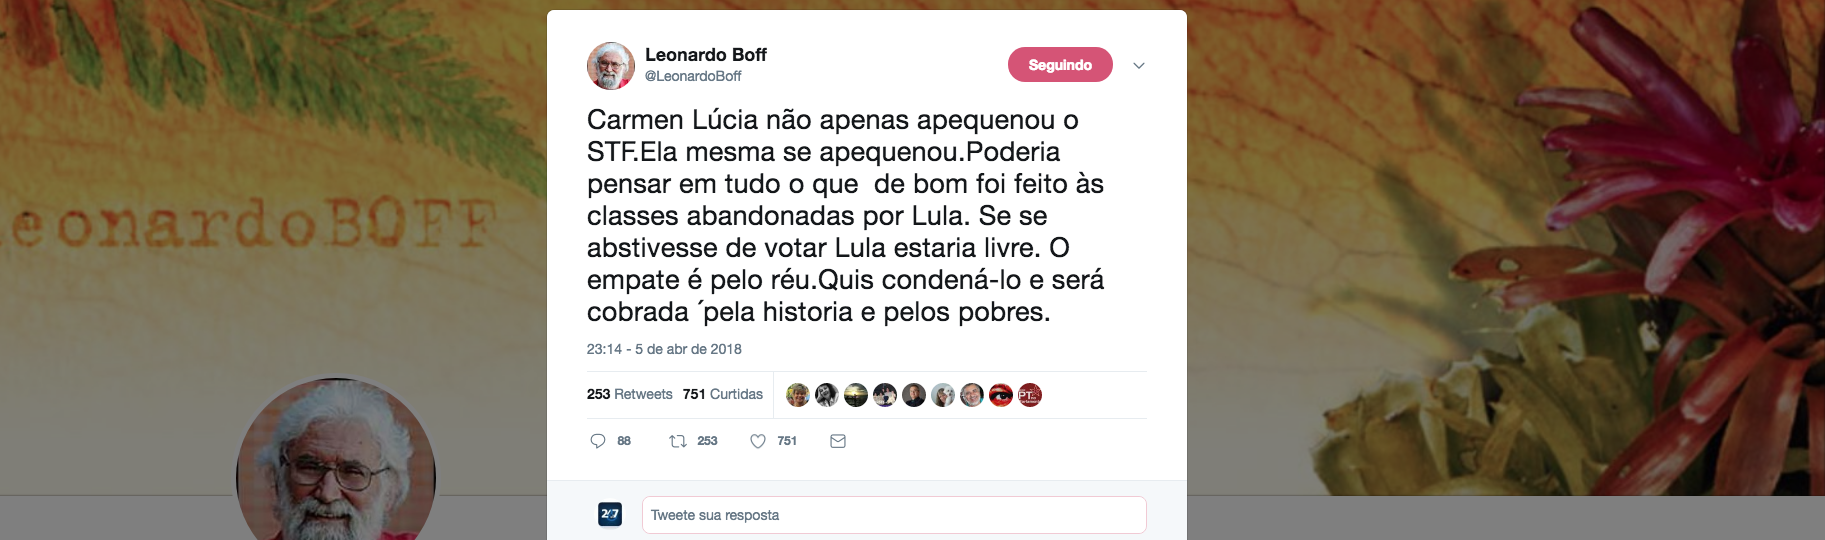 O teólogo Leonardo Boff diz que Cármen Lúcia, presidente do STF, é a responsável pela prisão ilegal do ex-presidente Lula e diz que ela será cobrada não apenas pela história, mas também pelos mais pobres, que são as principais vítimas do golpe de 2016 no Brasil, e que prossegue com a caçada a Lula